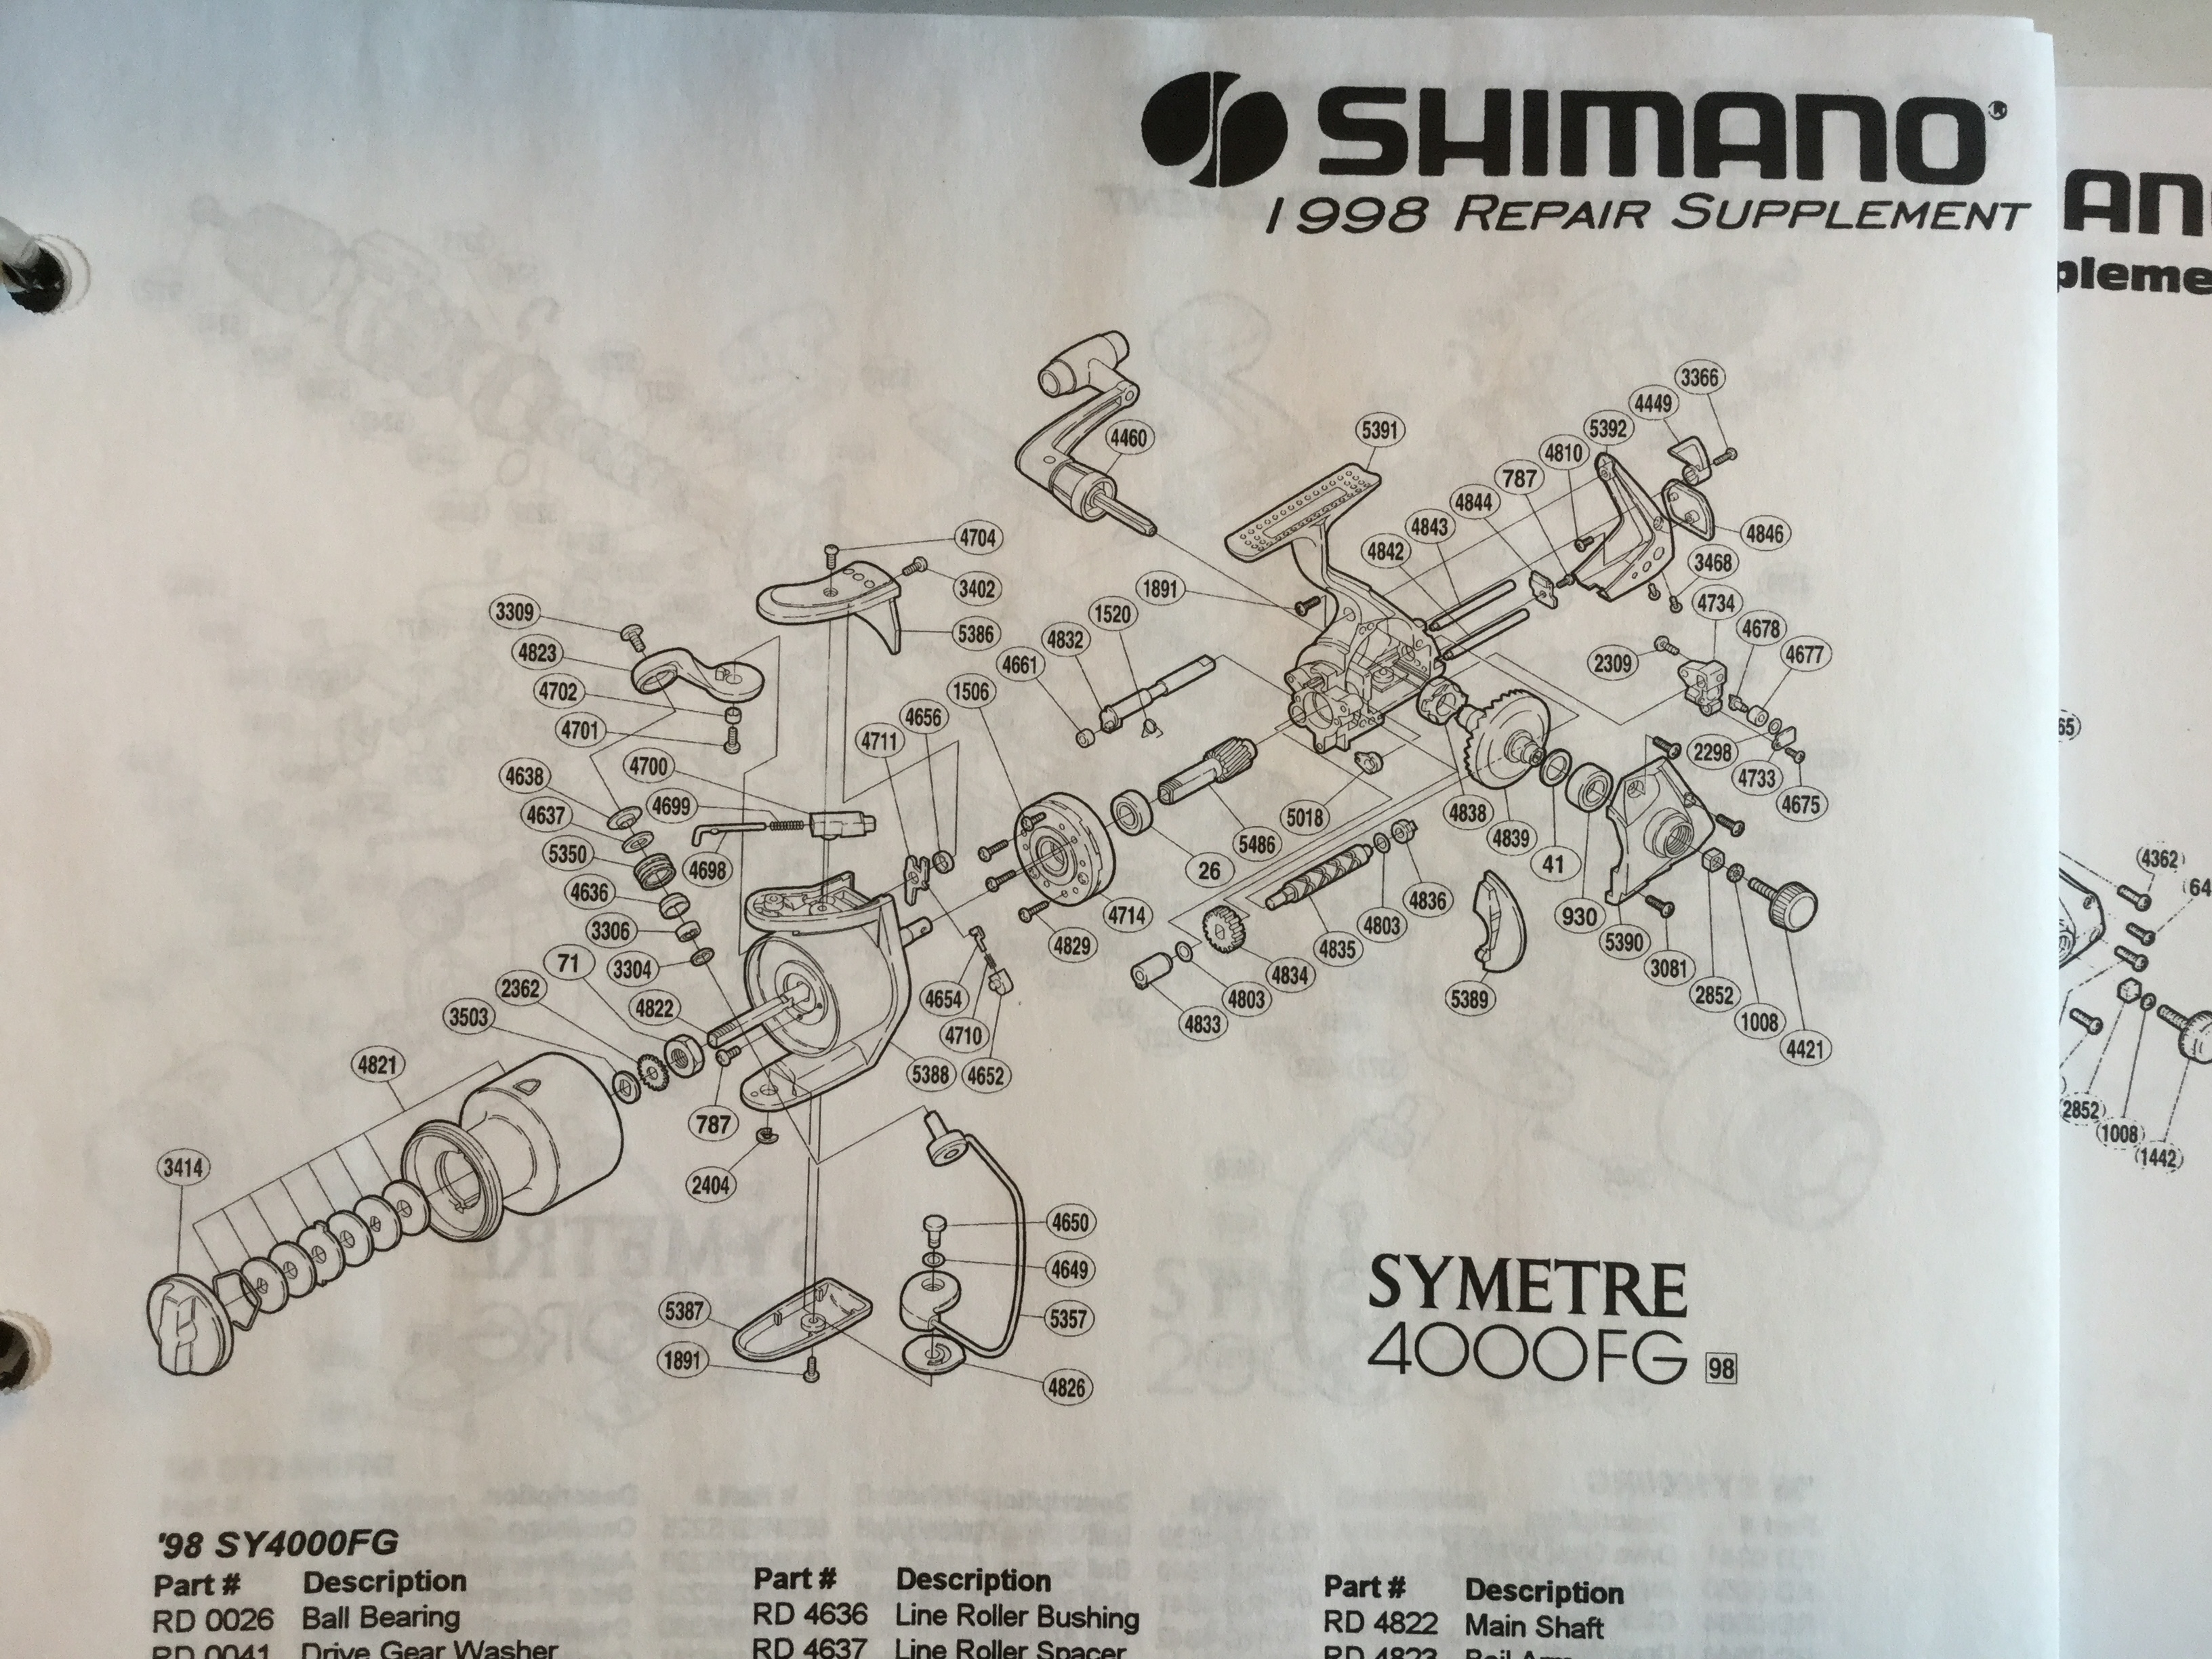 older model Shimano Symetre 4000FL